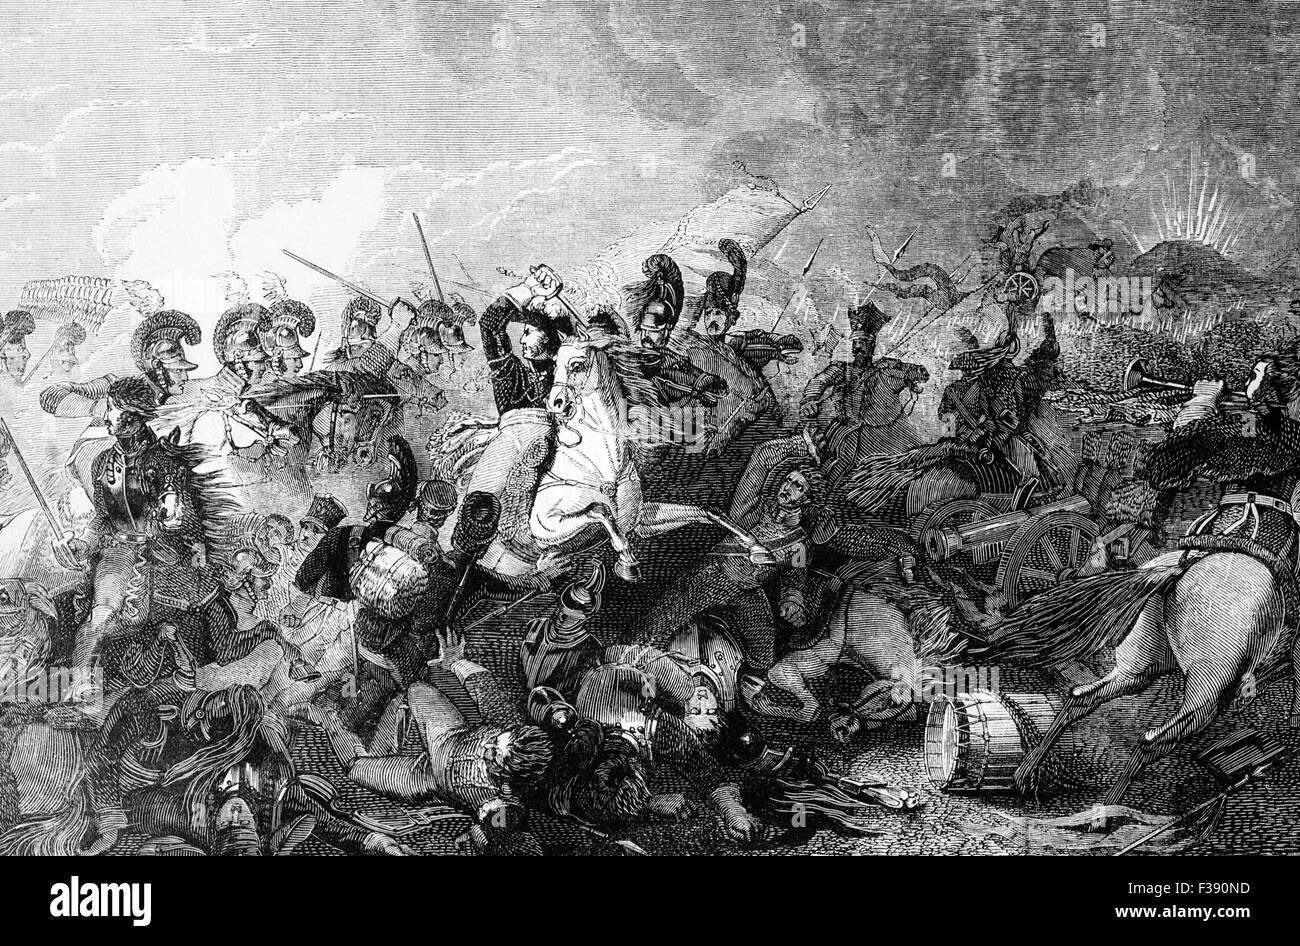 Die Ladung des Lord Somerset schwere Brigade während der Schlacht von Waterloo, die Niederlage der französischen Armee unter Napoleon Bonaparte auf Sonntag, 18. Juni 1815 geführt. Stockfoto